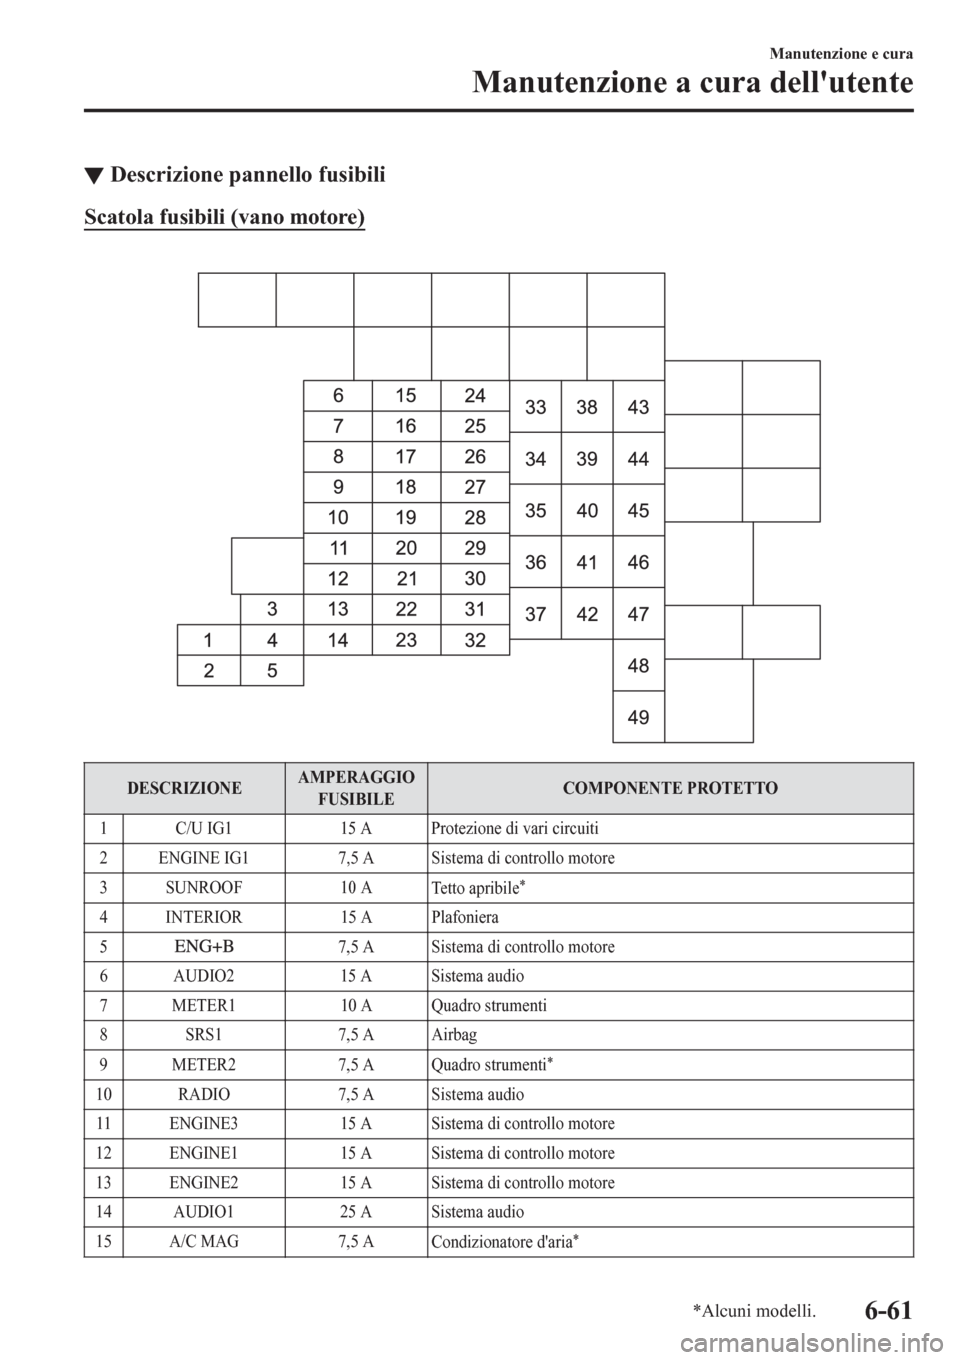 MAZDA MODEL CX-3 2016  Manuale del proprietario (in Italian) ▼Descrizione pannello fusibili
Scatola fusibili (vano motore)
 
DESCRIZIONEAMPERAGGIO
FUSIBILECOMPONENTE PROTETTO
1 C/U IG1 15 A Protezione di vari circuiti
2 ENGINE IG1 7,5 A Sistema di controllo m